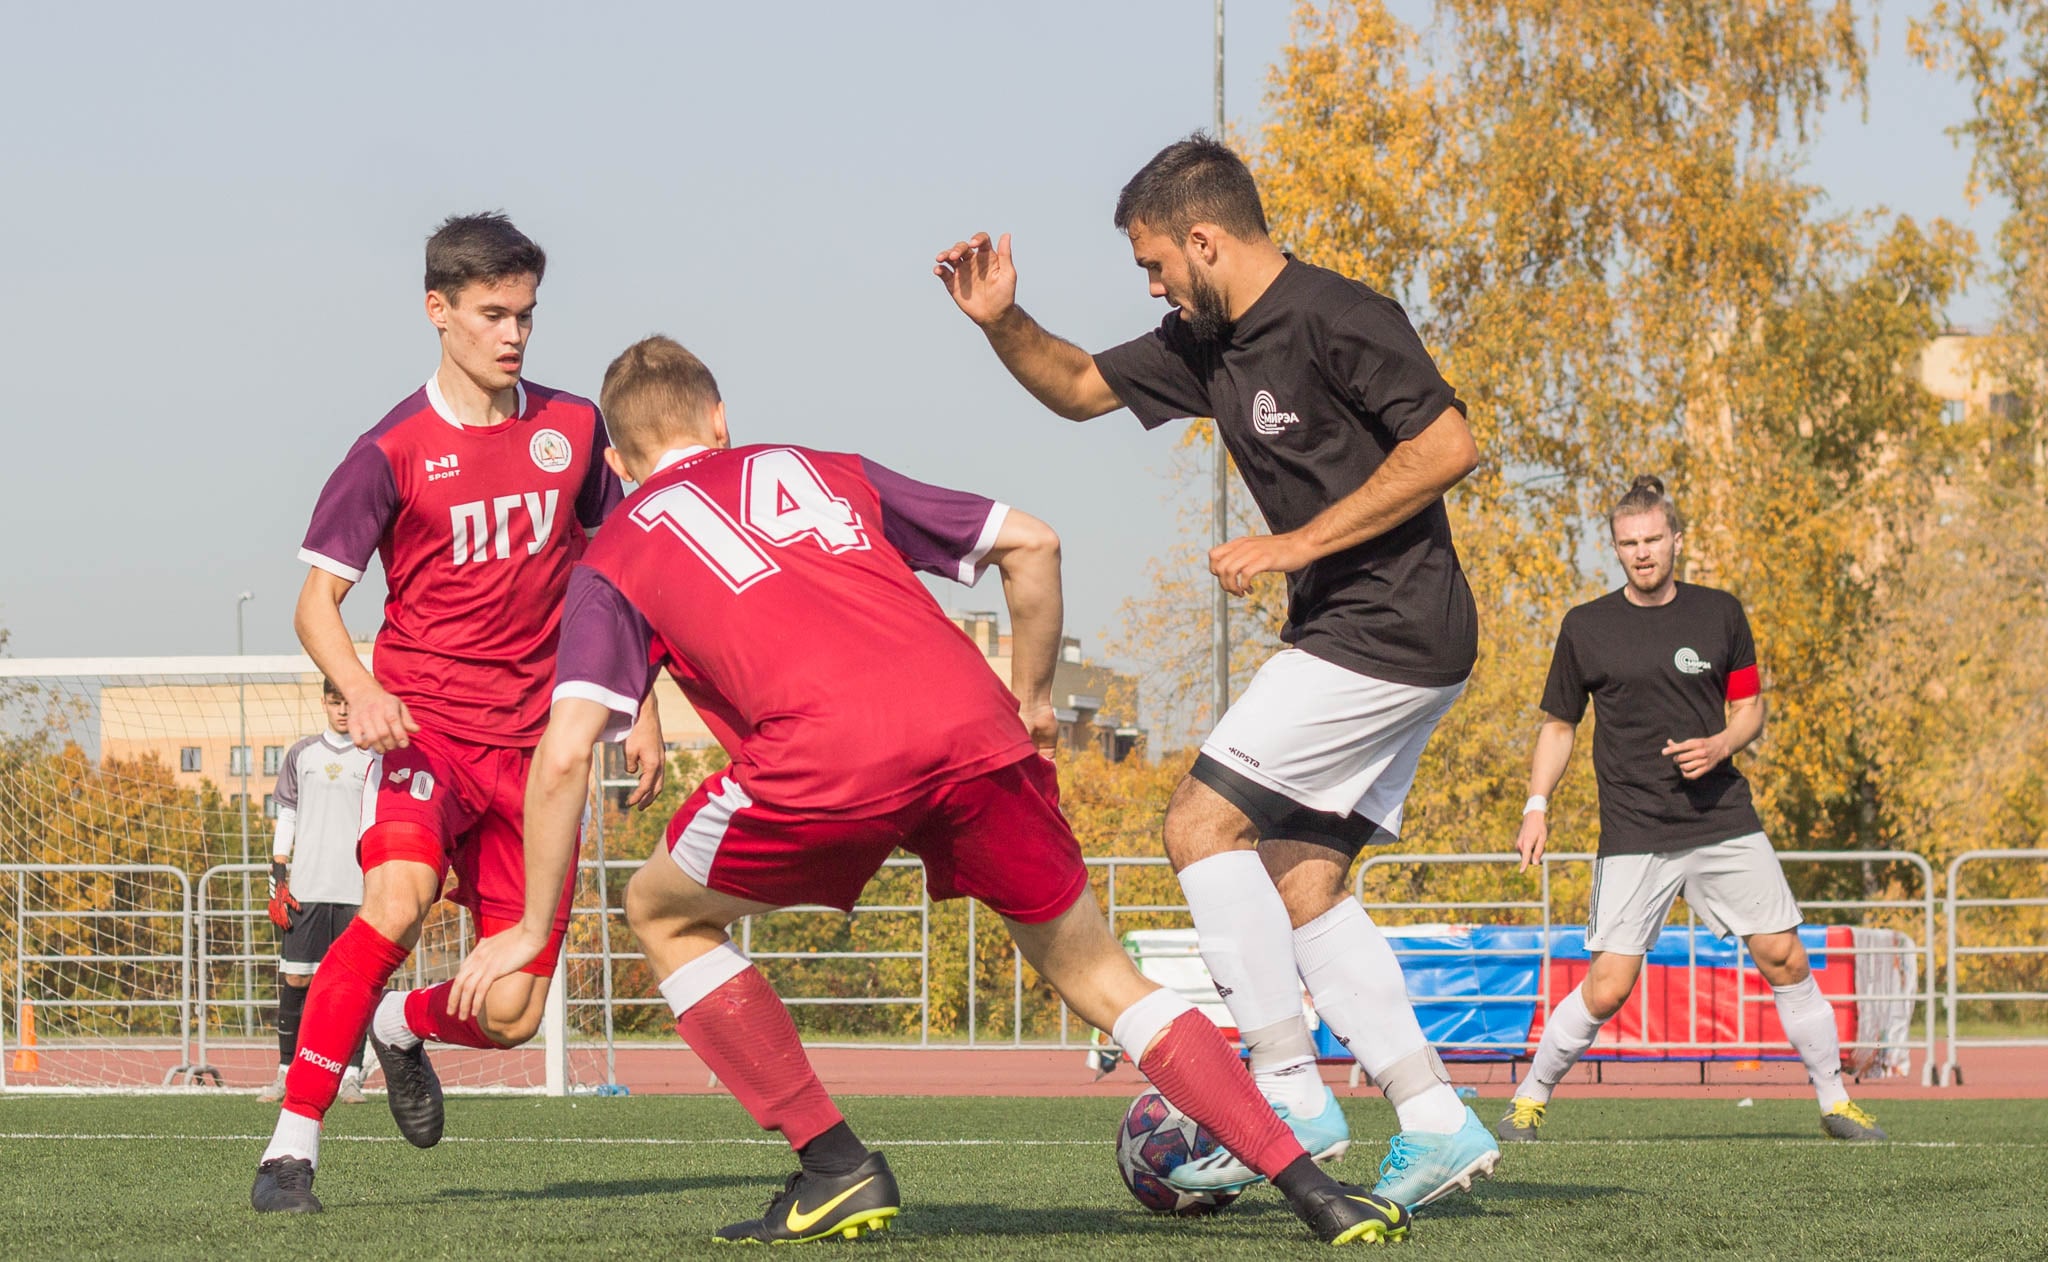 Студенческий спортивный клуб Пензенского госуниверситета «Беркут» стал третьим клубом в России